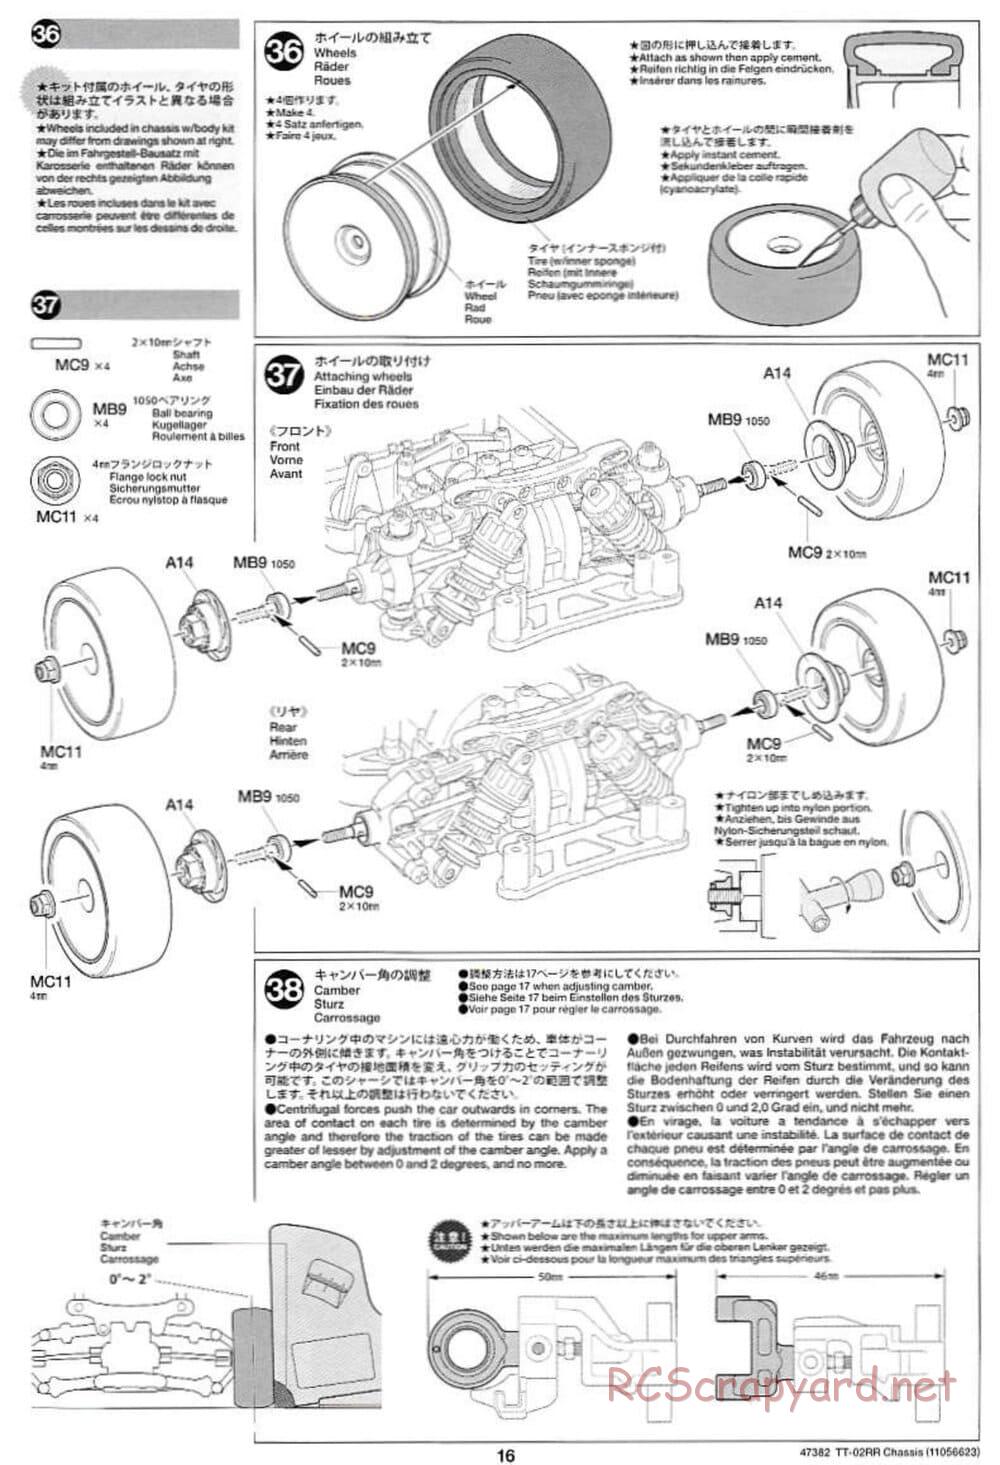 Tamiya - TT-02RR Chassis - Manual - Page 16